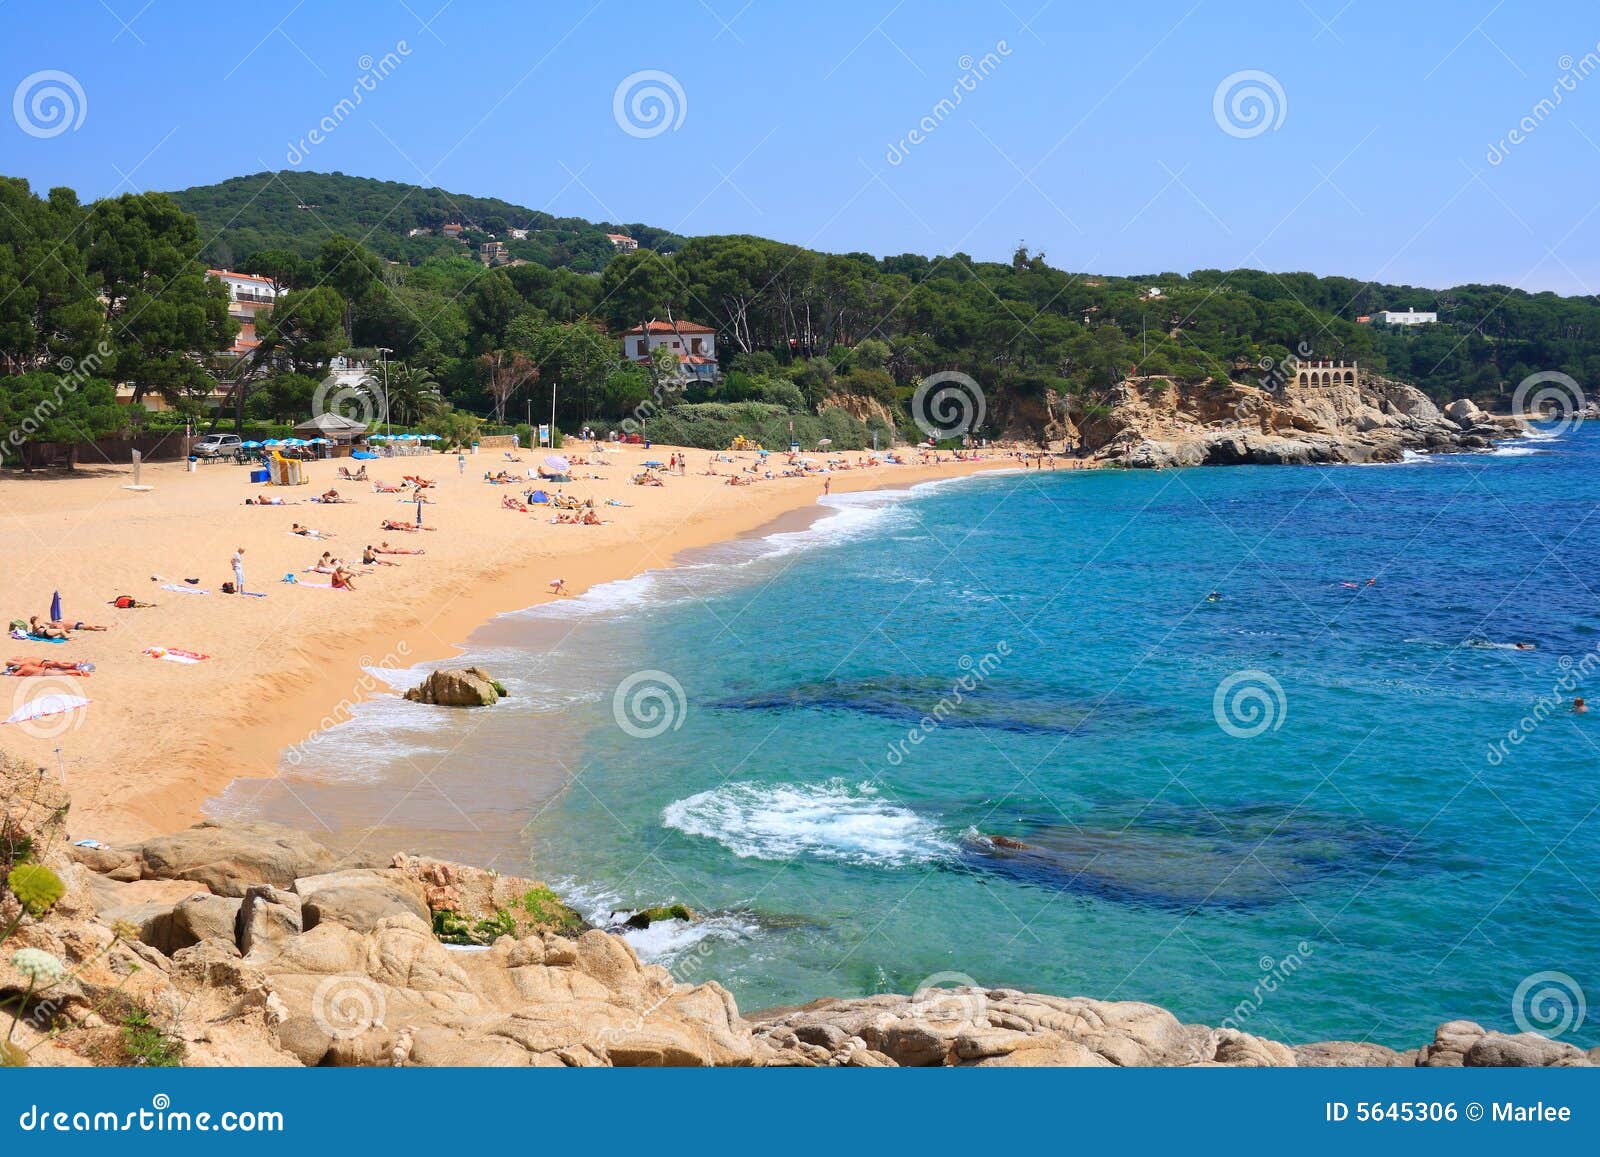 cala rovira beach (costa brava, spain)